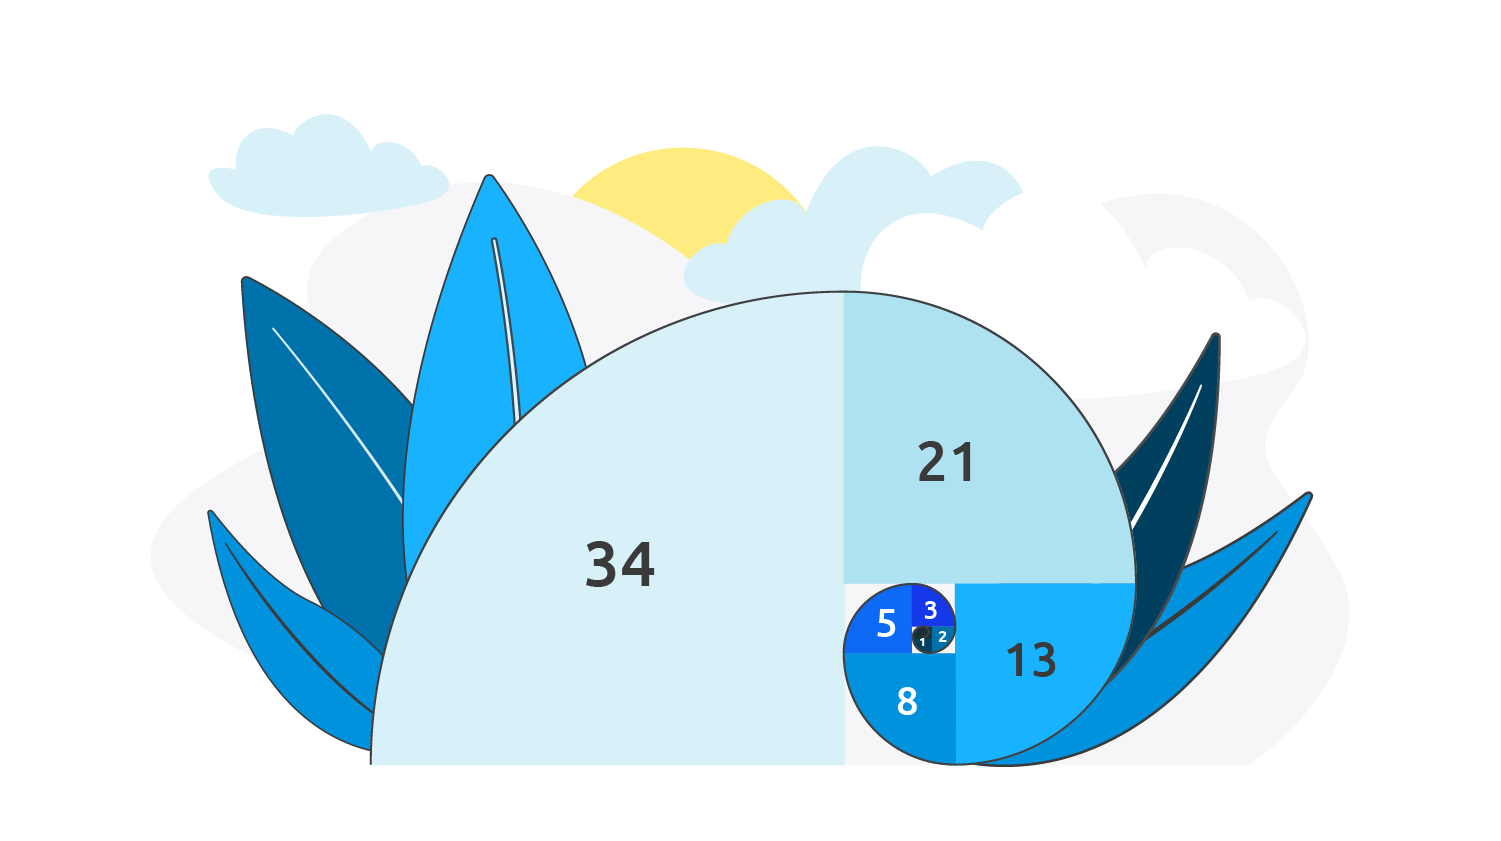 Fibonacci-Schnecke mit den Zahlen 1 bis 34 in verschiedenen Blautönen.